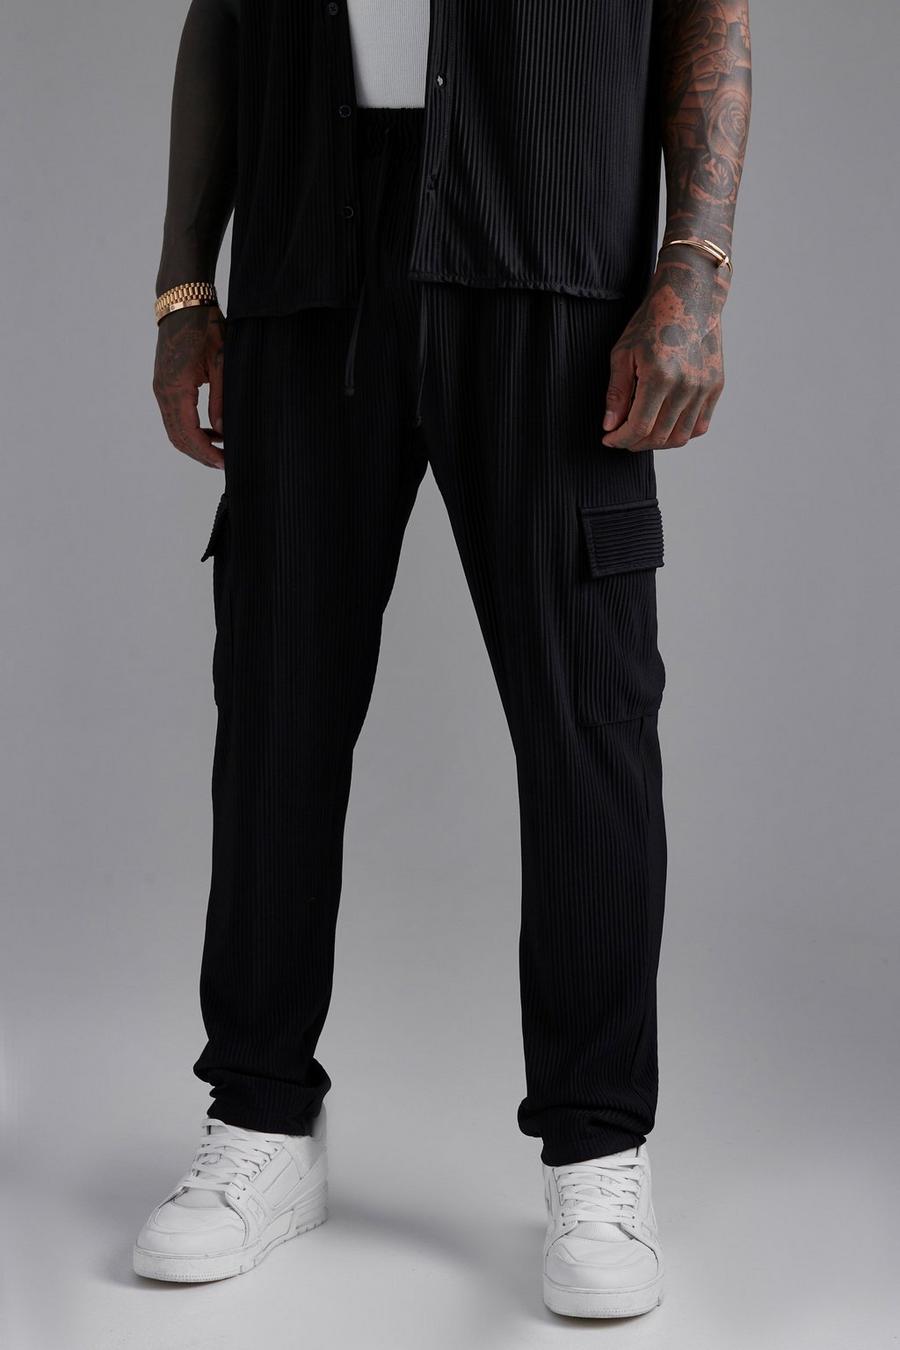 Pantalón cargo plisado ajustado, Black